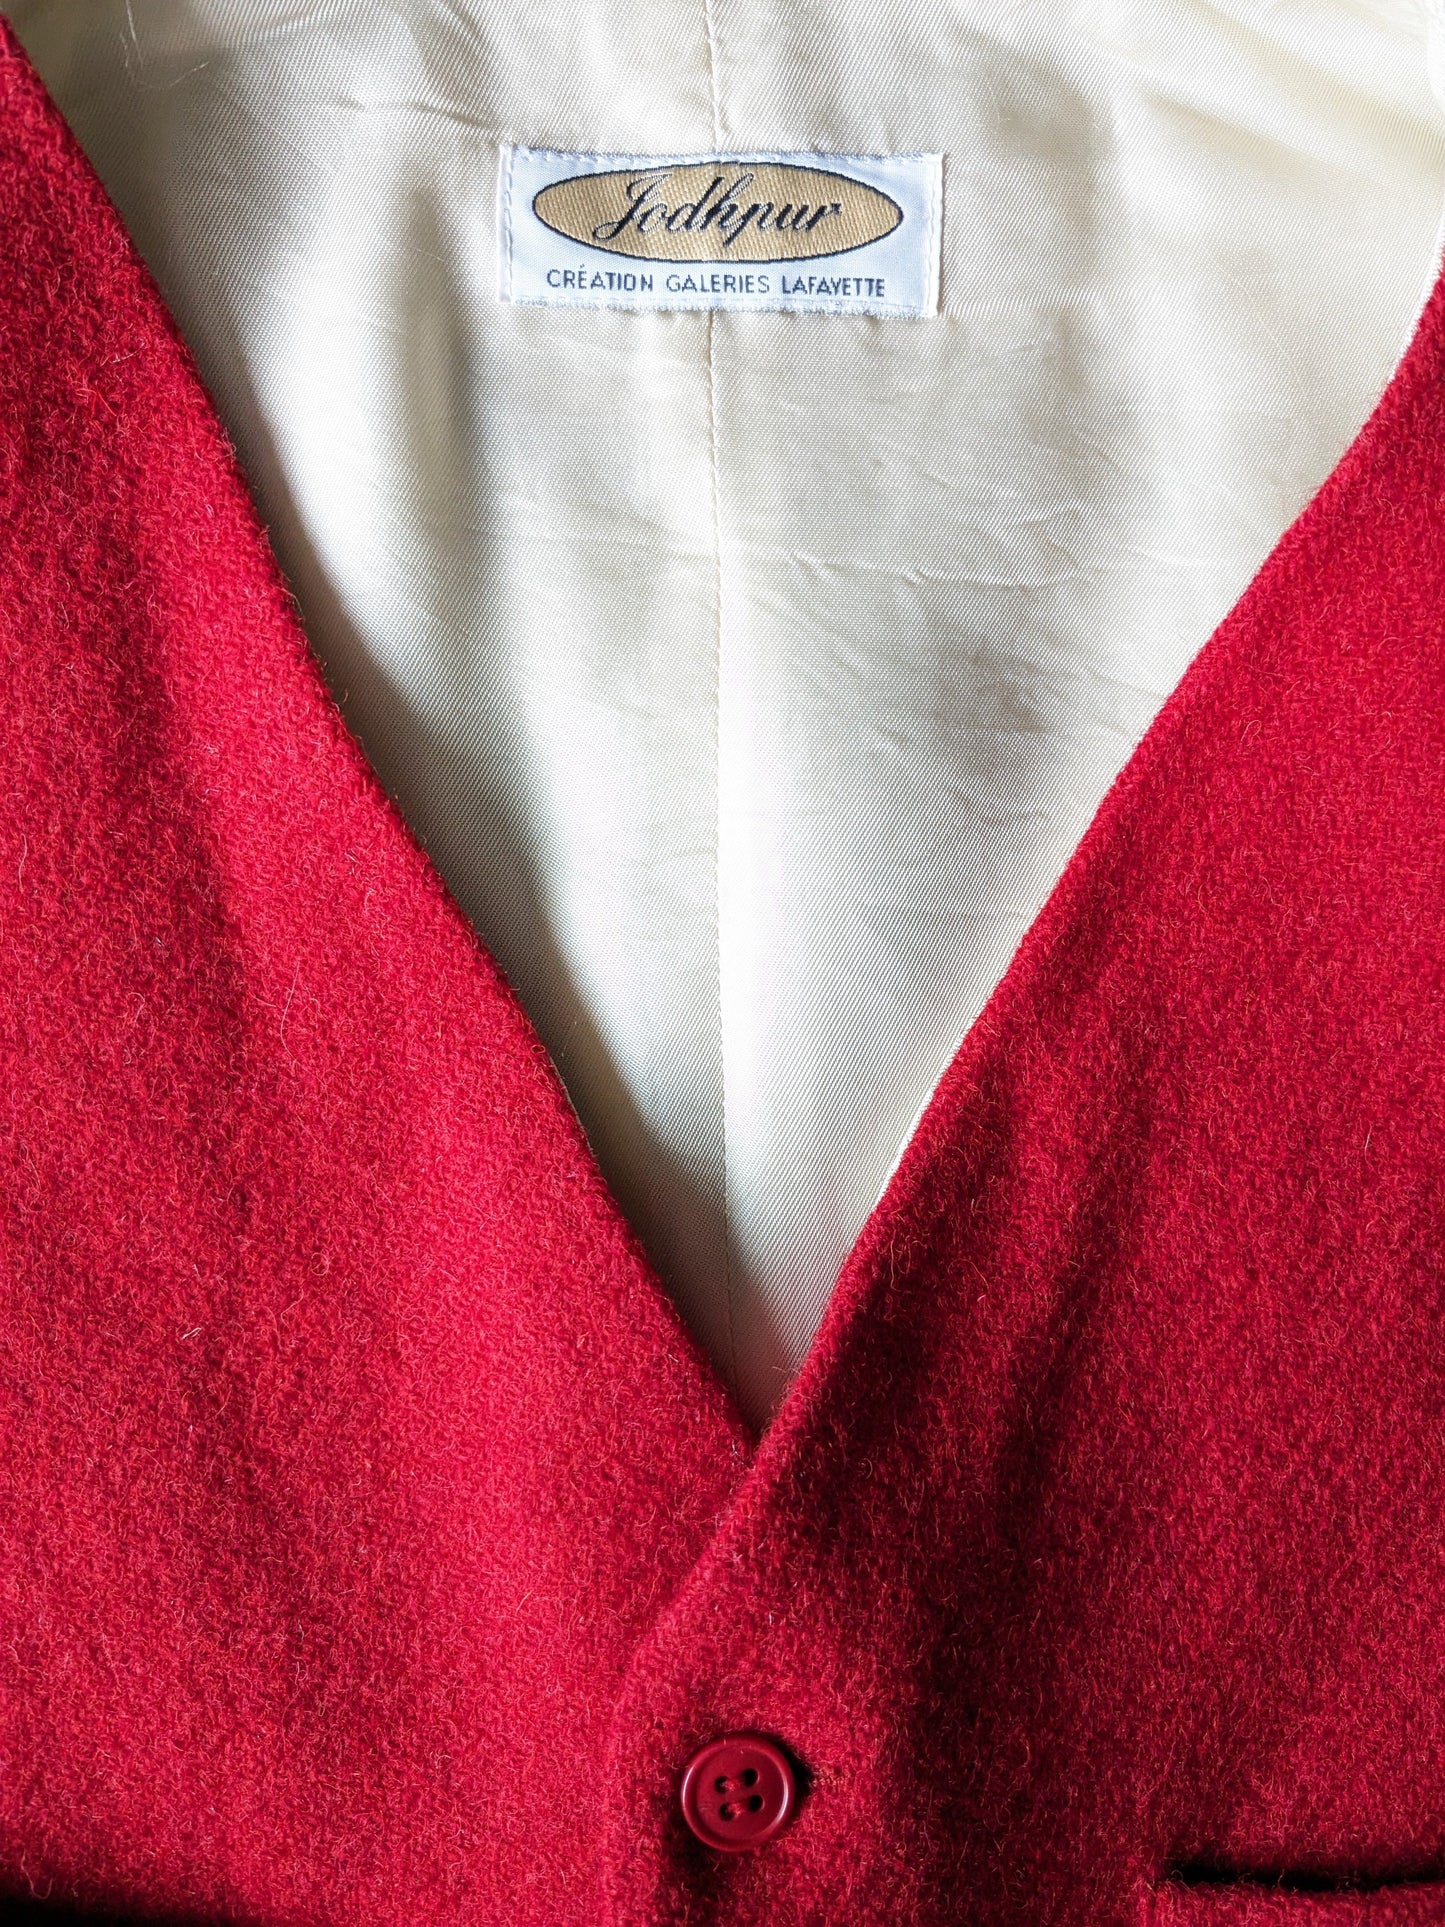 Vintage Jodhpur Woolen Gilet. Rot gefärbt. Größe M.